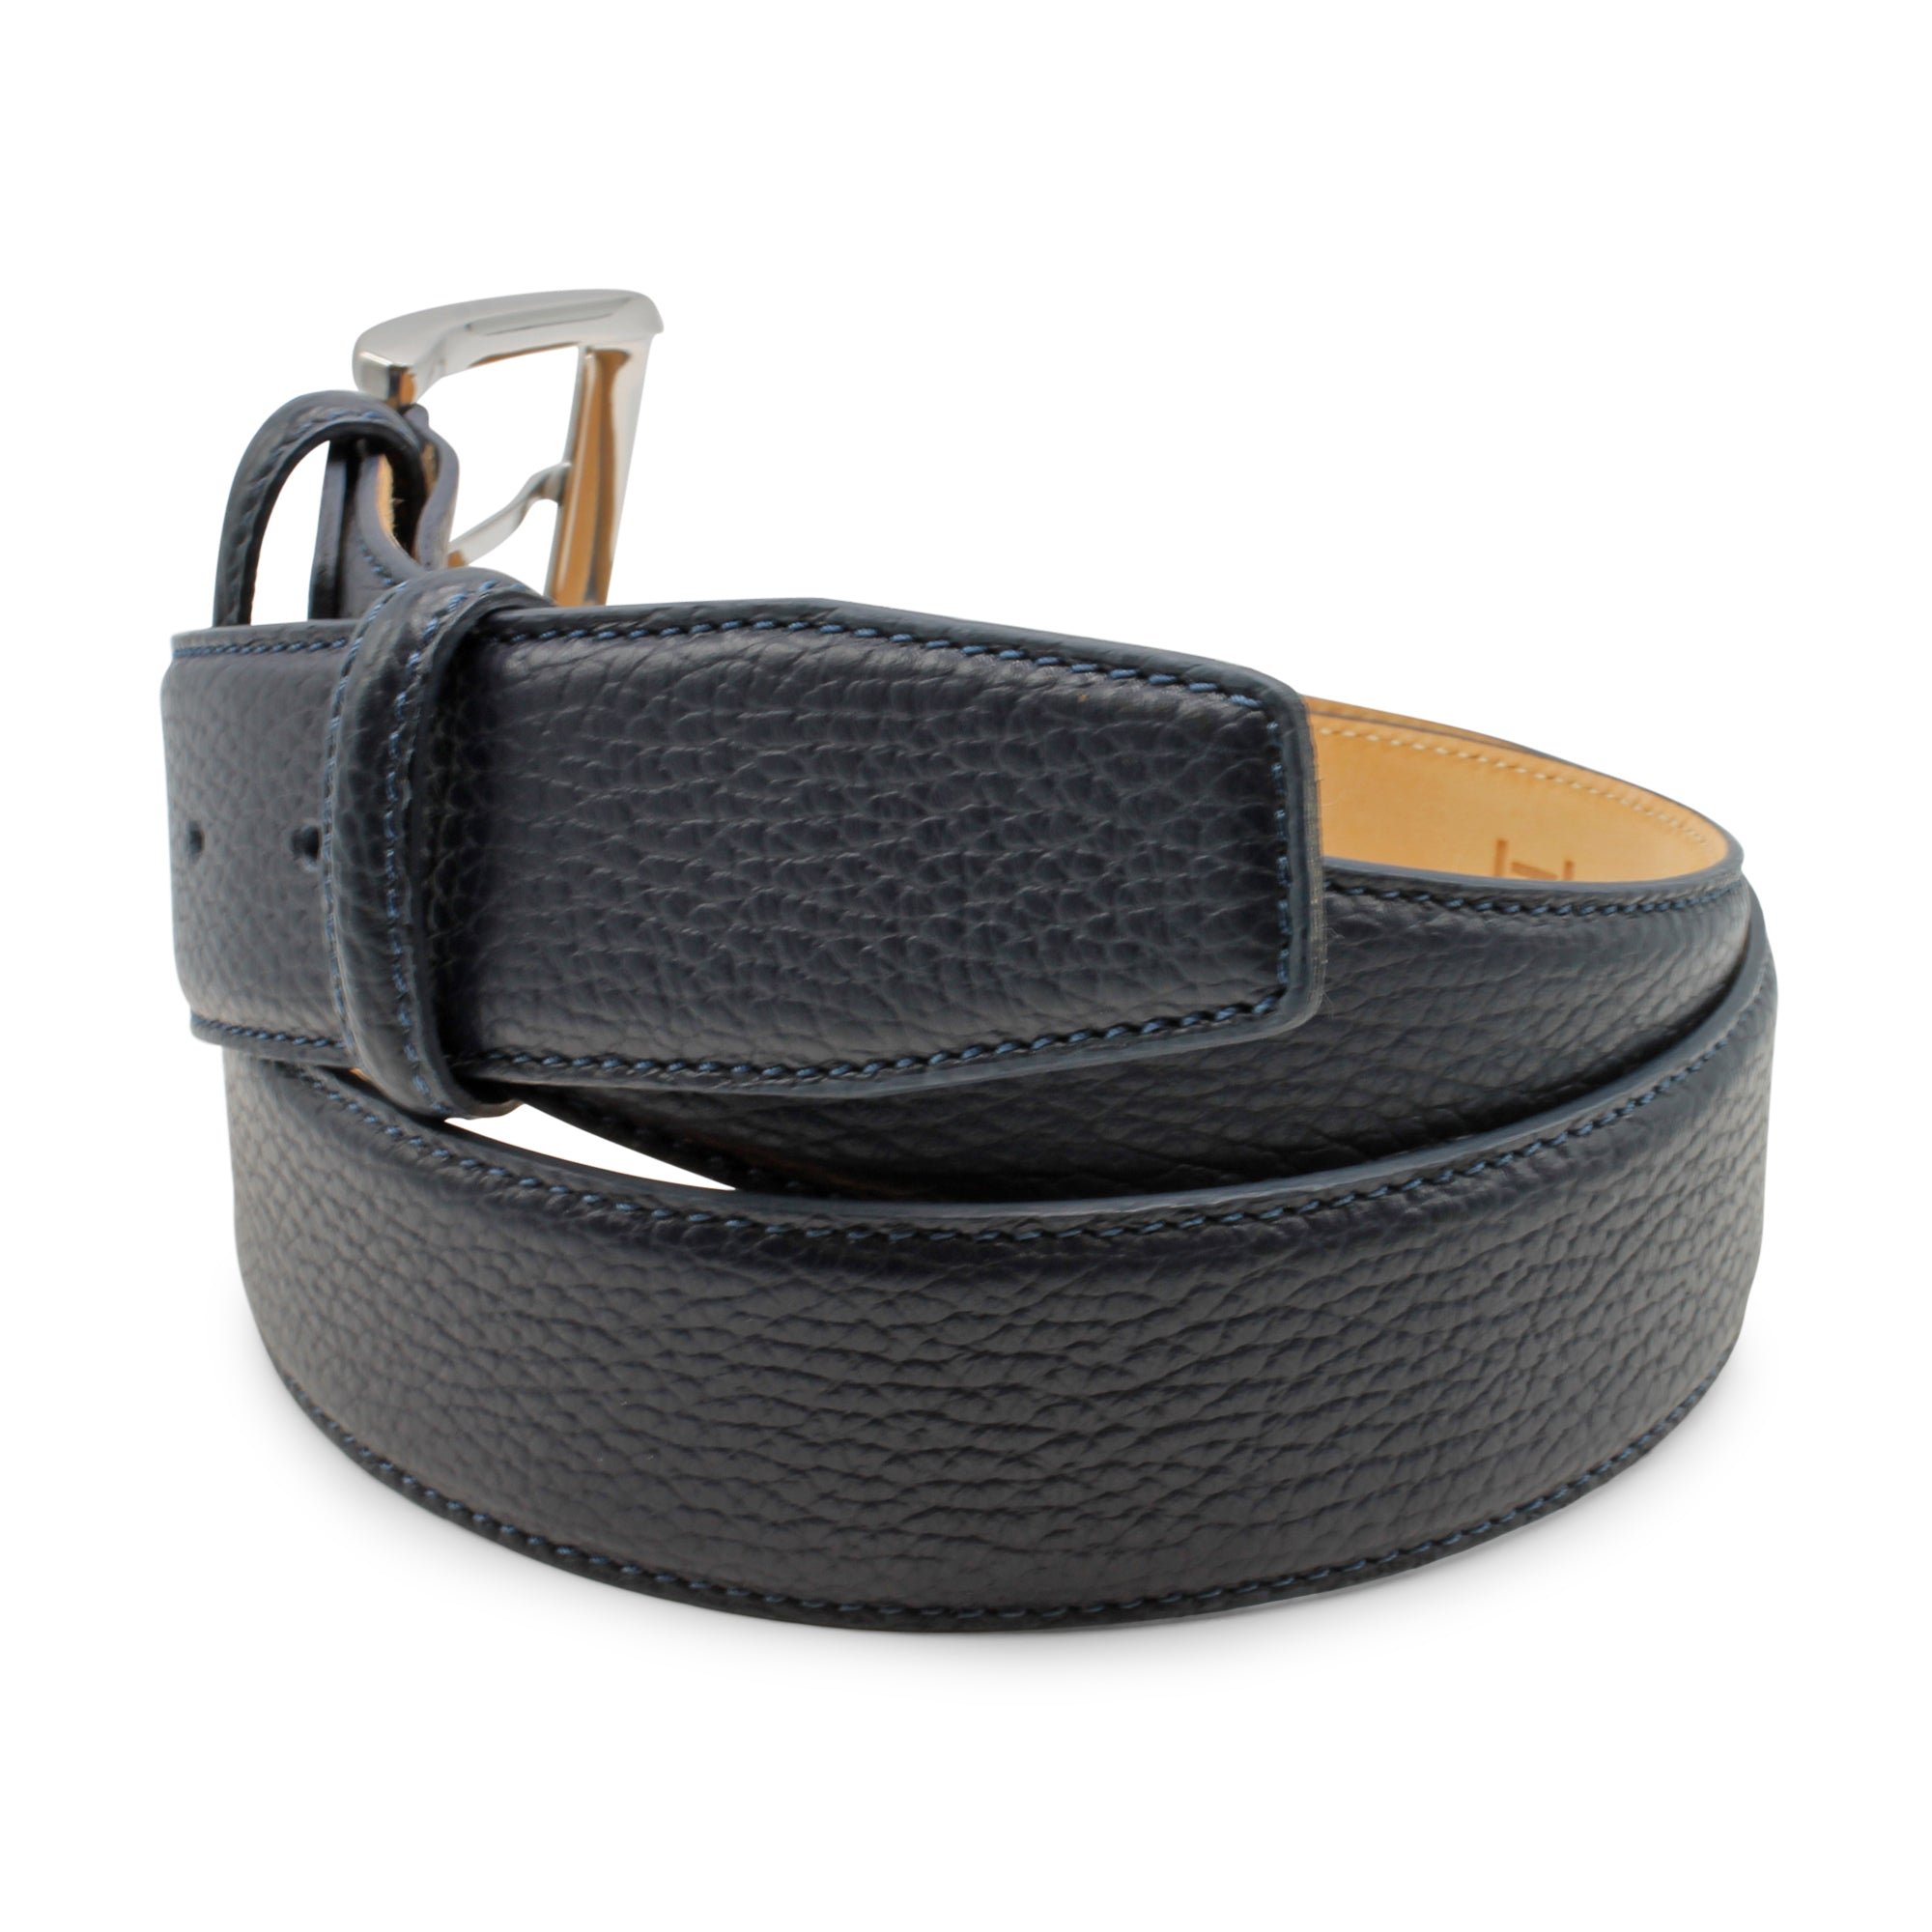 Cervo Texture Mottled Leather Belt 40mm